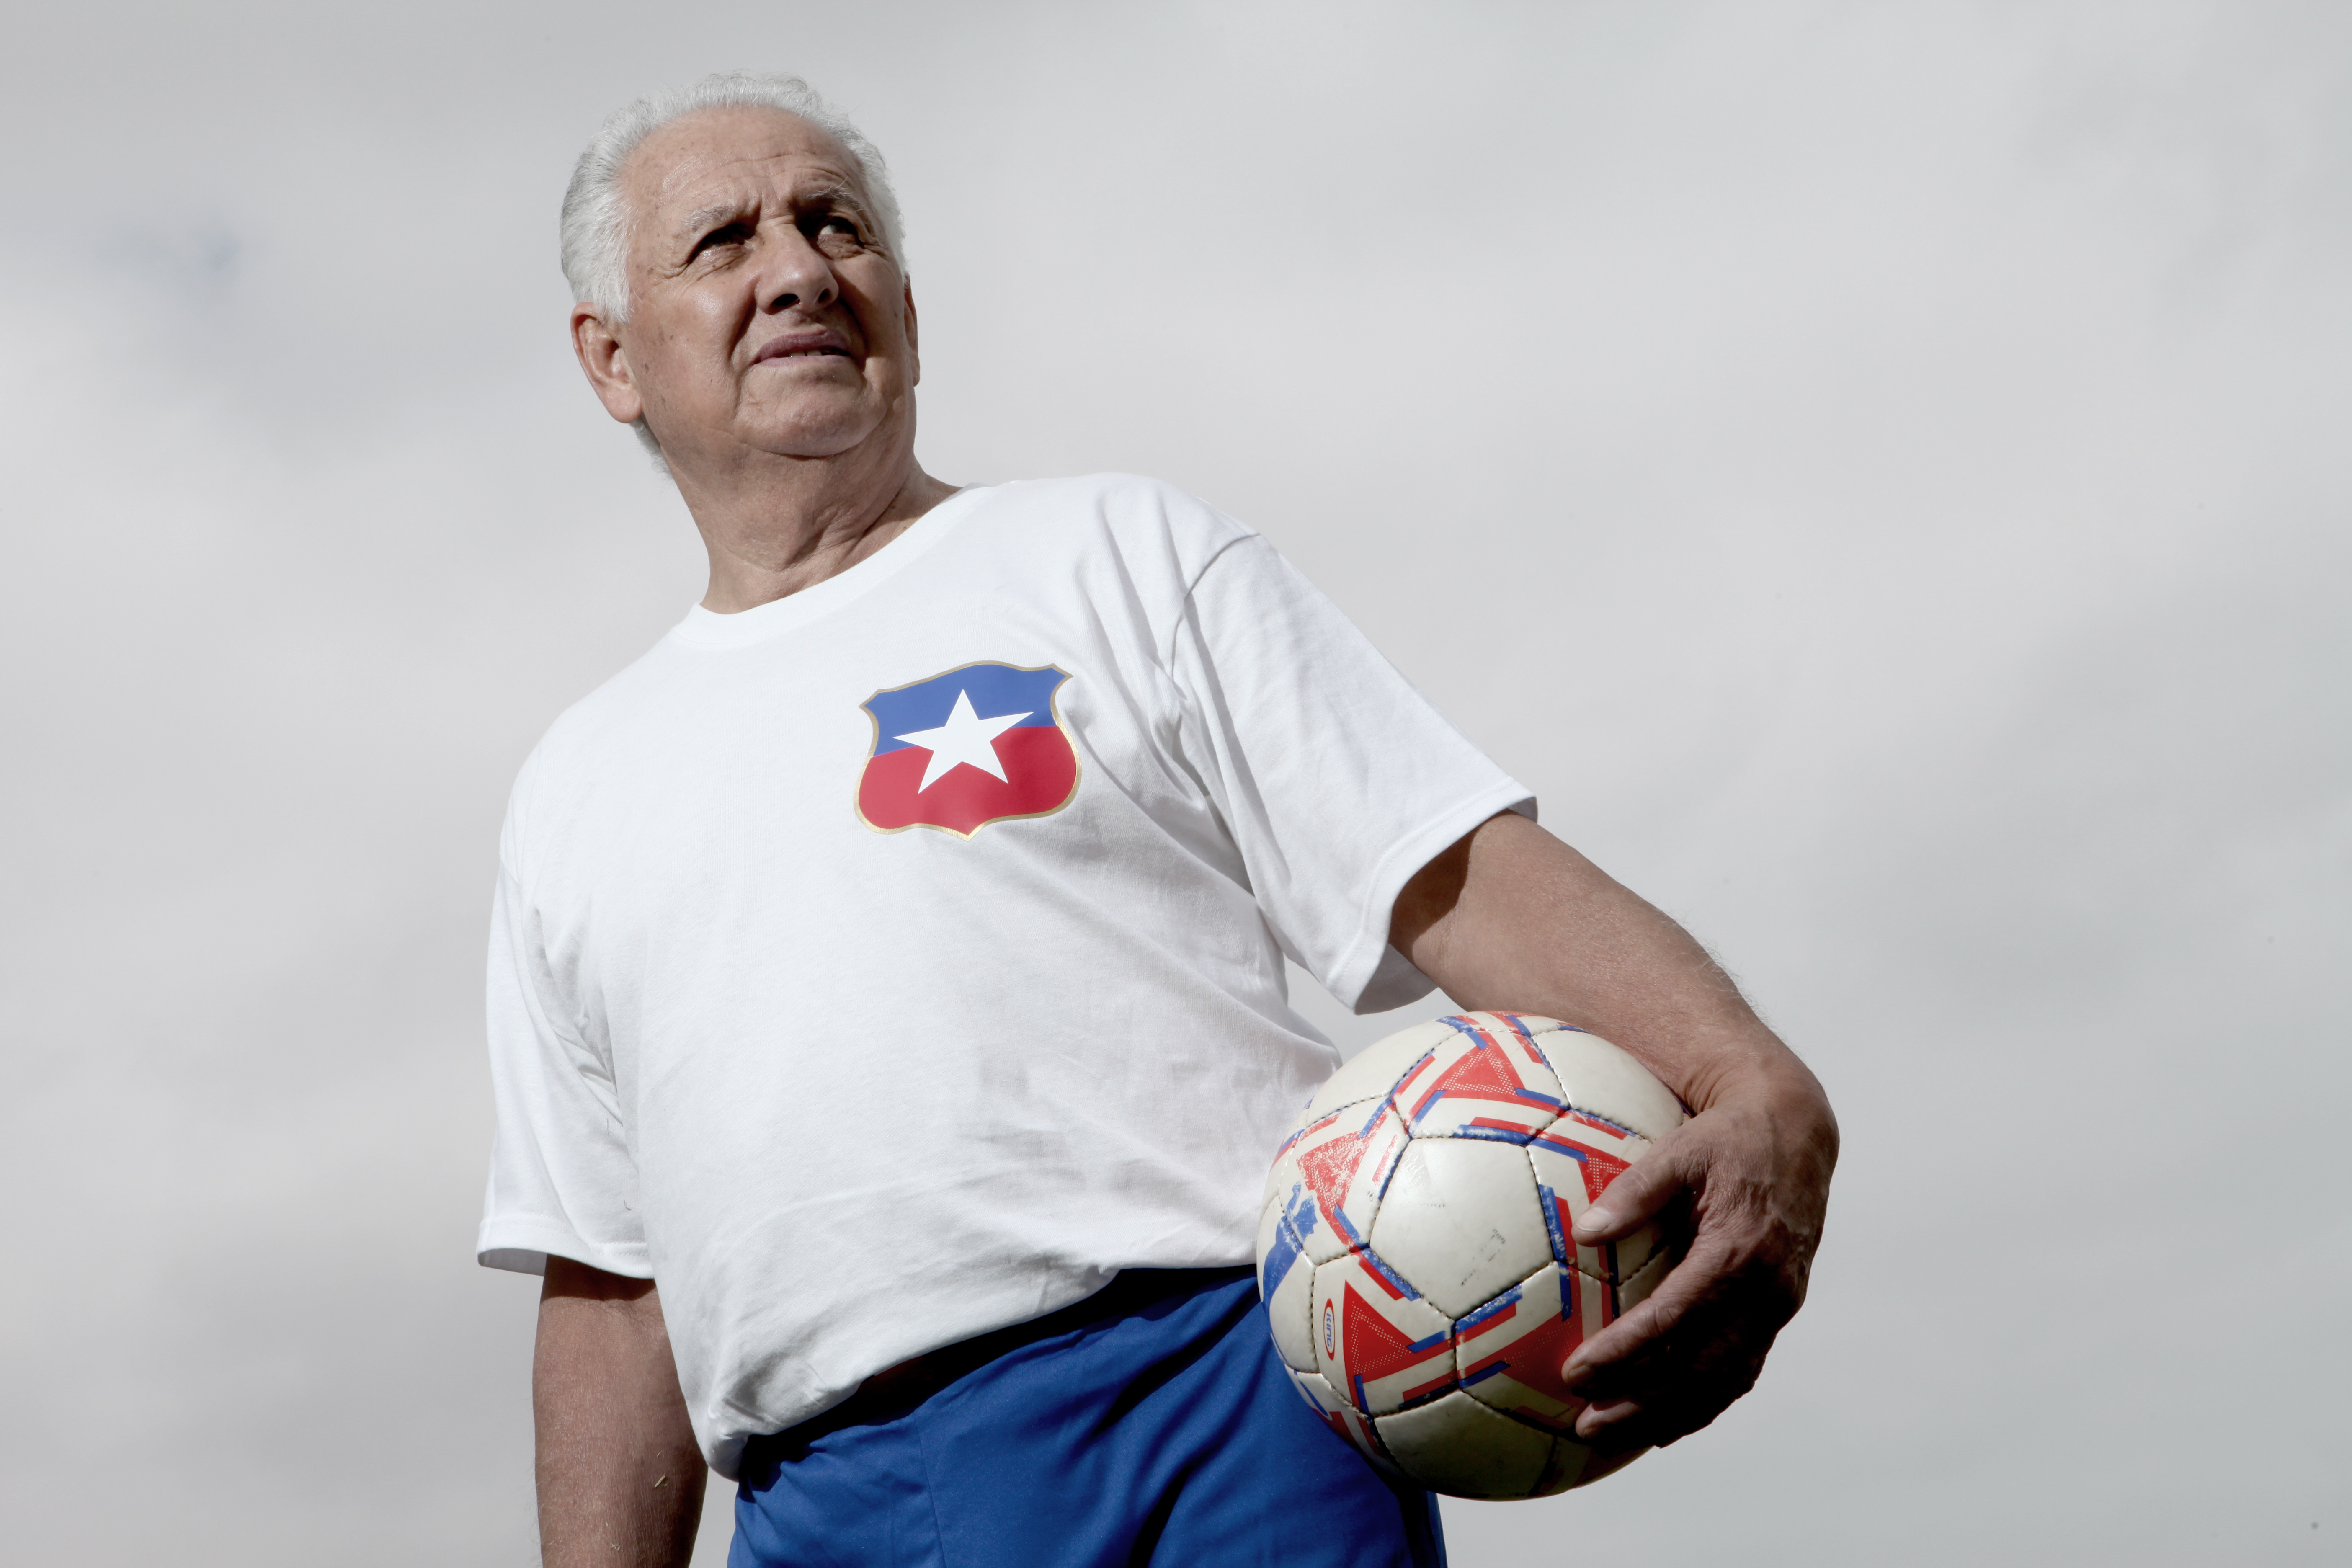 Luto en el fútbol: falleció el entrenador mundialista que le dio a